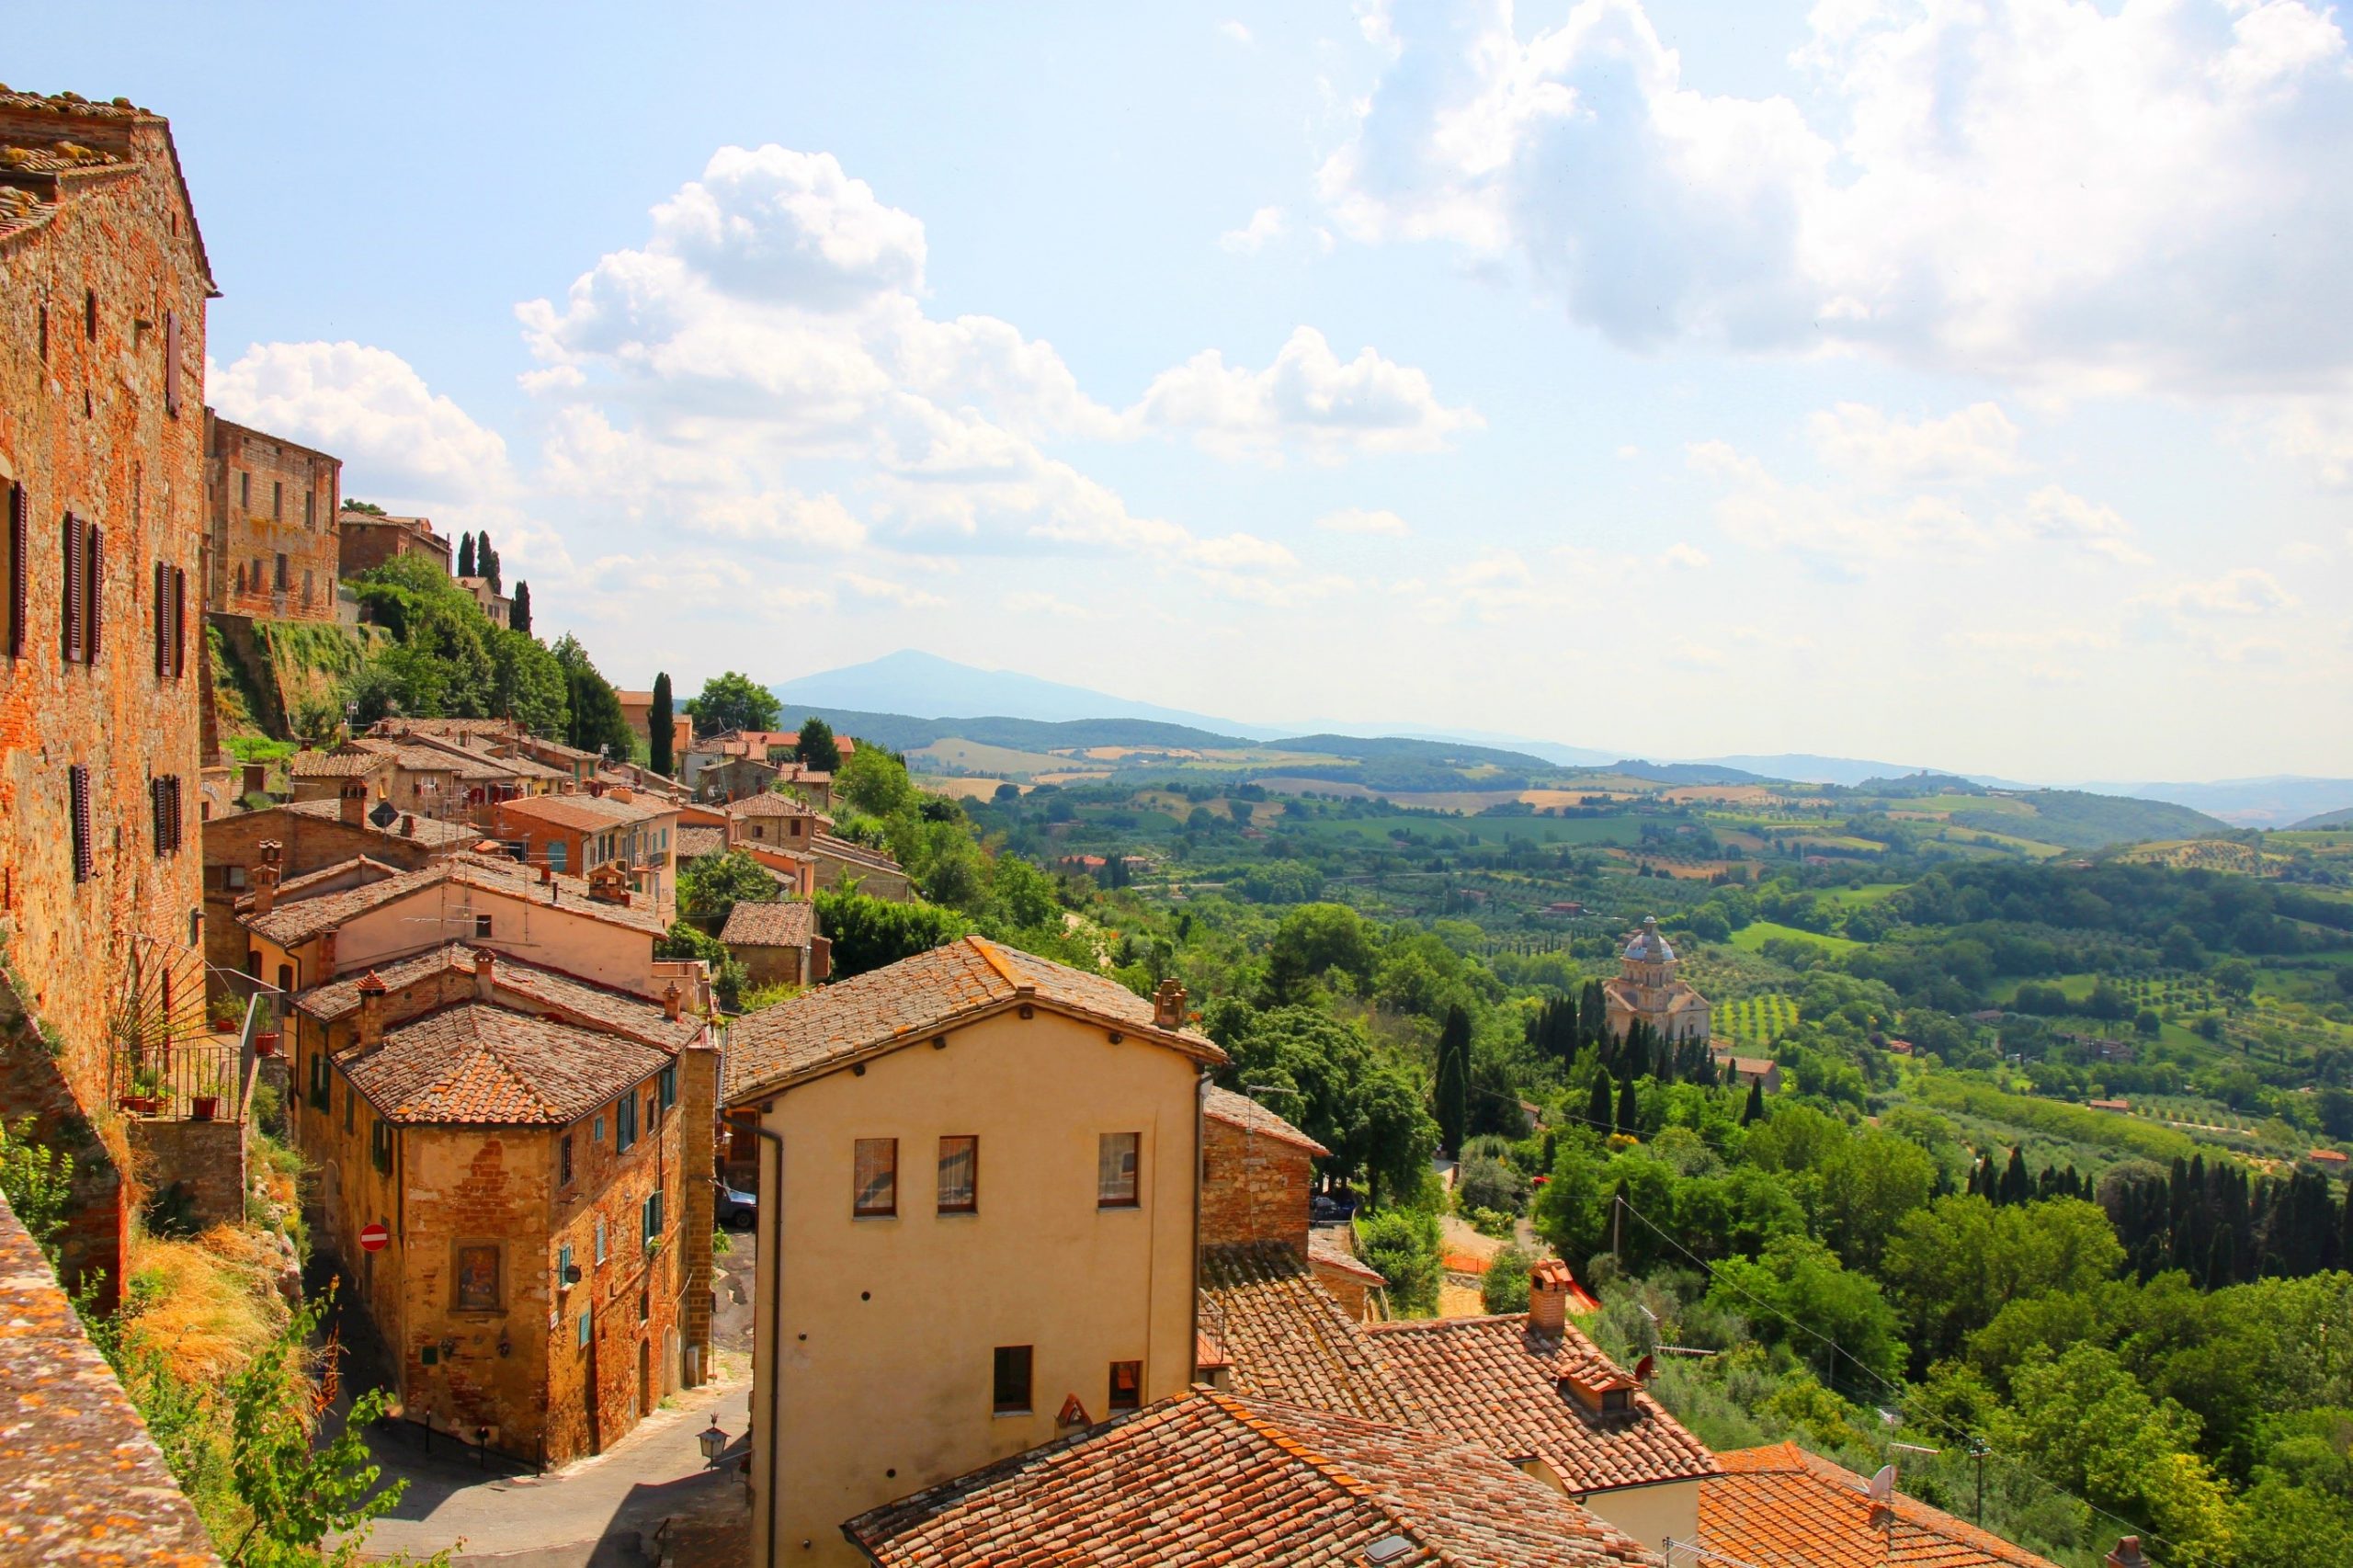 Landsby Montepulciano er en liten perle i Toscana, omgitt av vinmarker og olivenlunder.